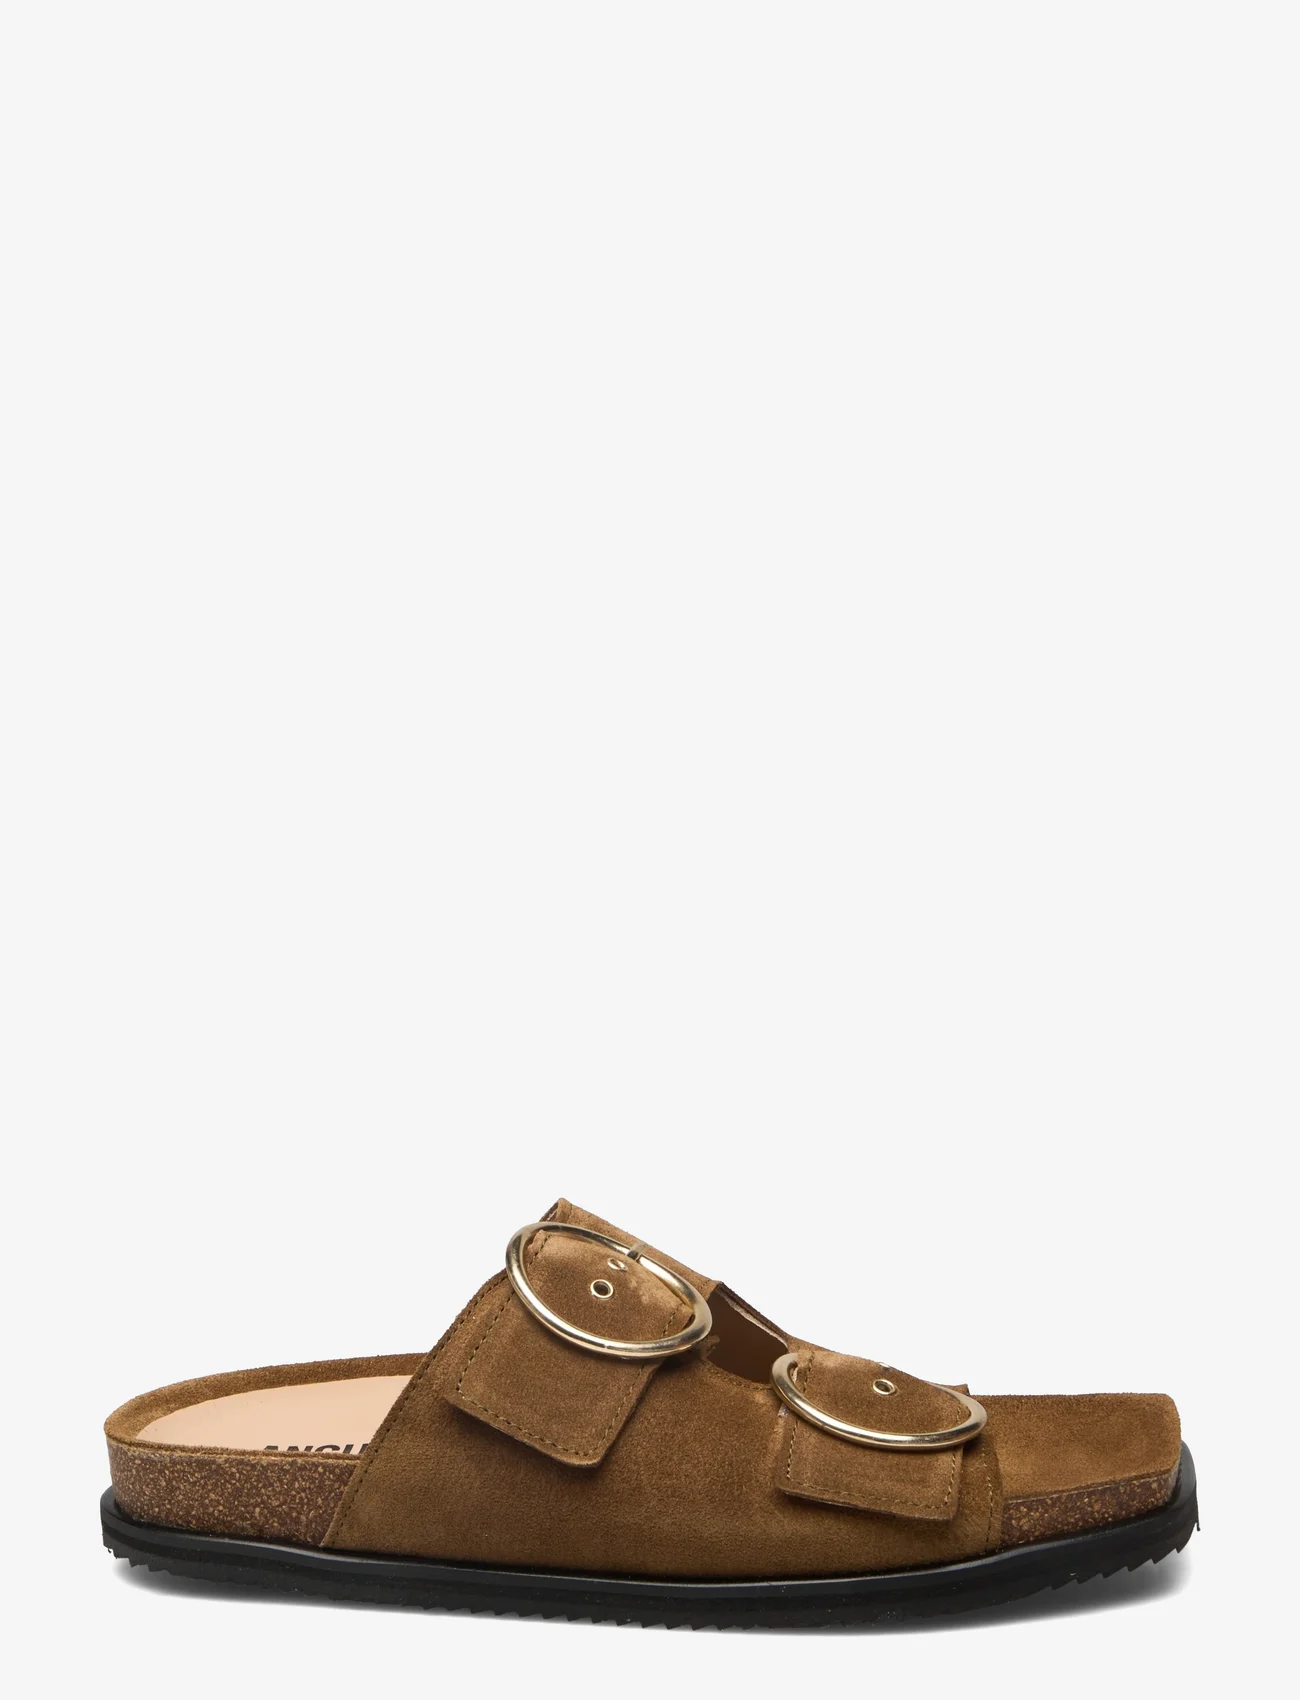 ANGULUS - Sandals - flat - open toe - op - platta sandaler - 2209 mustard - 1